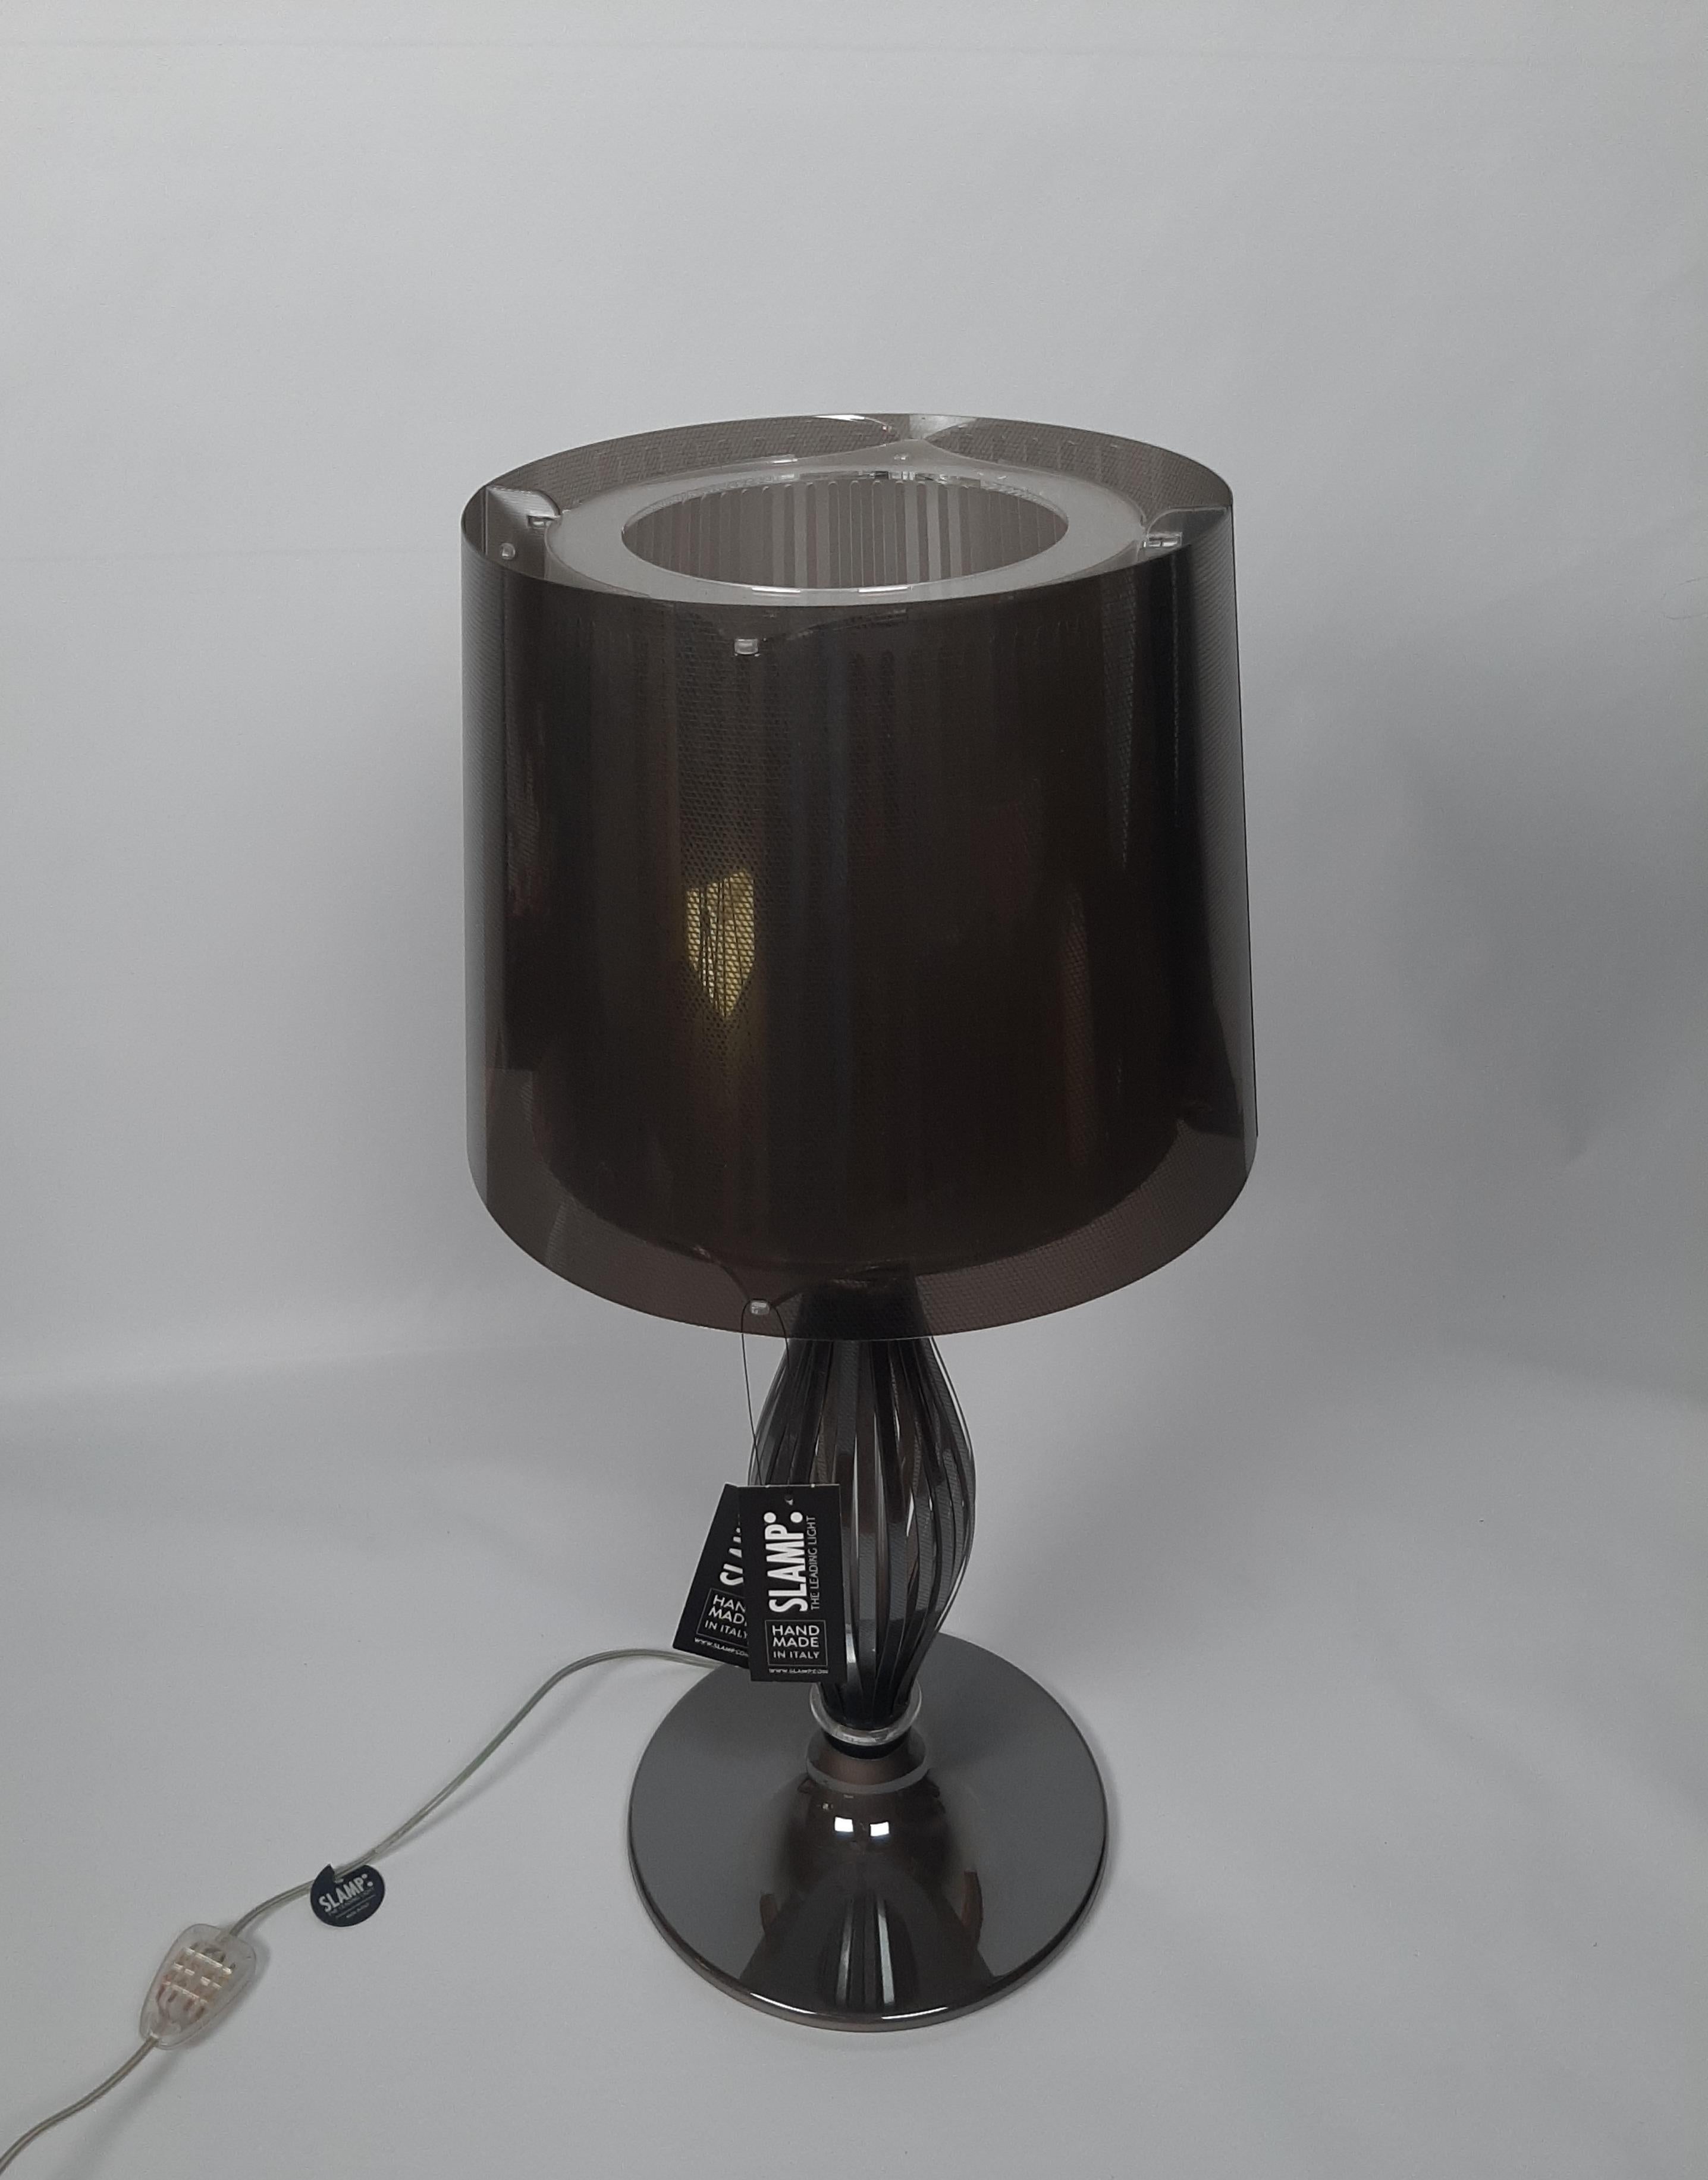 Lampe de table modèle Liza fabriquée par Slamp. Lampe modèle Liza en gris.
Lampe de table en plastique d'inspiration baroque qui combine un design à la saveur traditionnelle avec l'utilisation de matériaux contemporains, les technopolymères.
Conçue